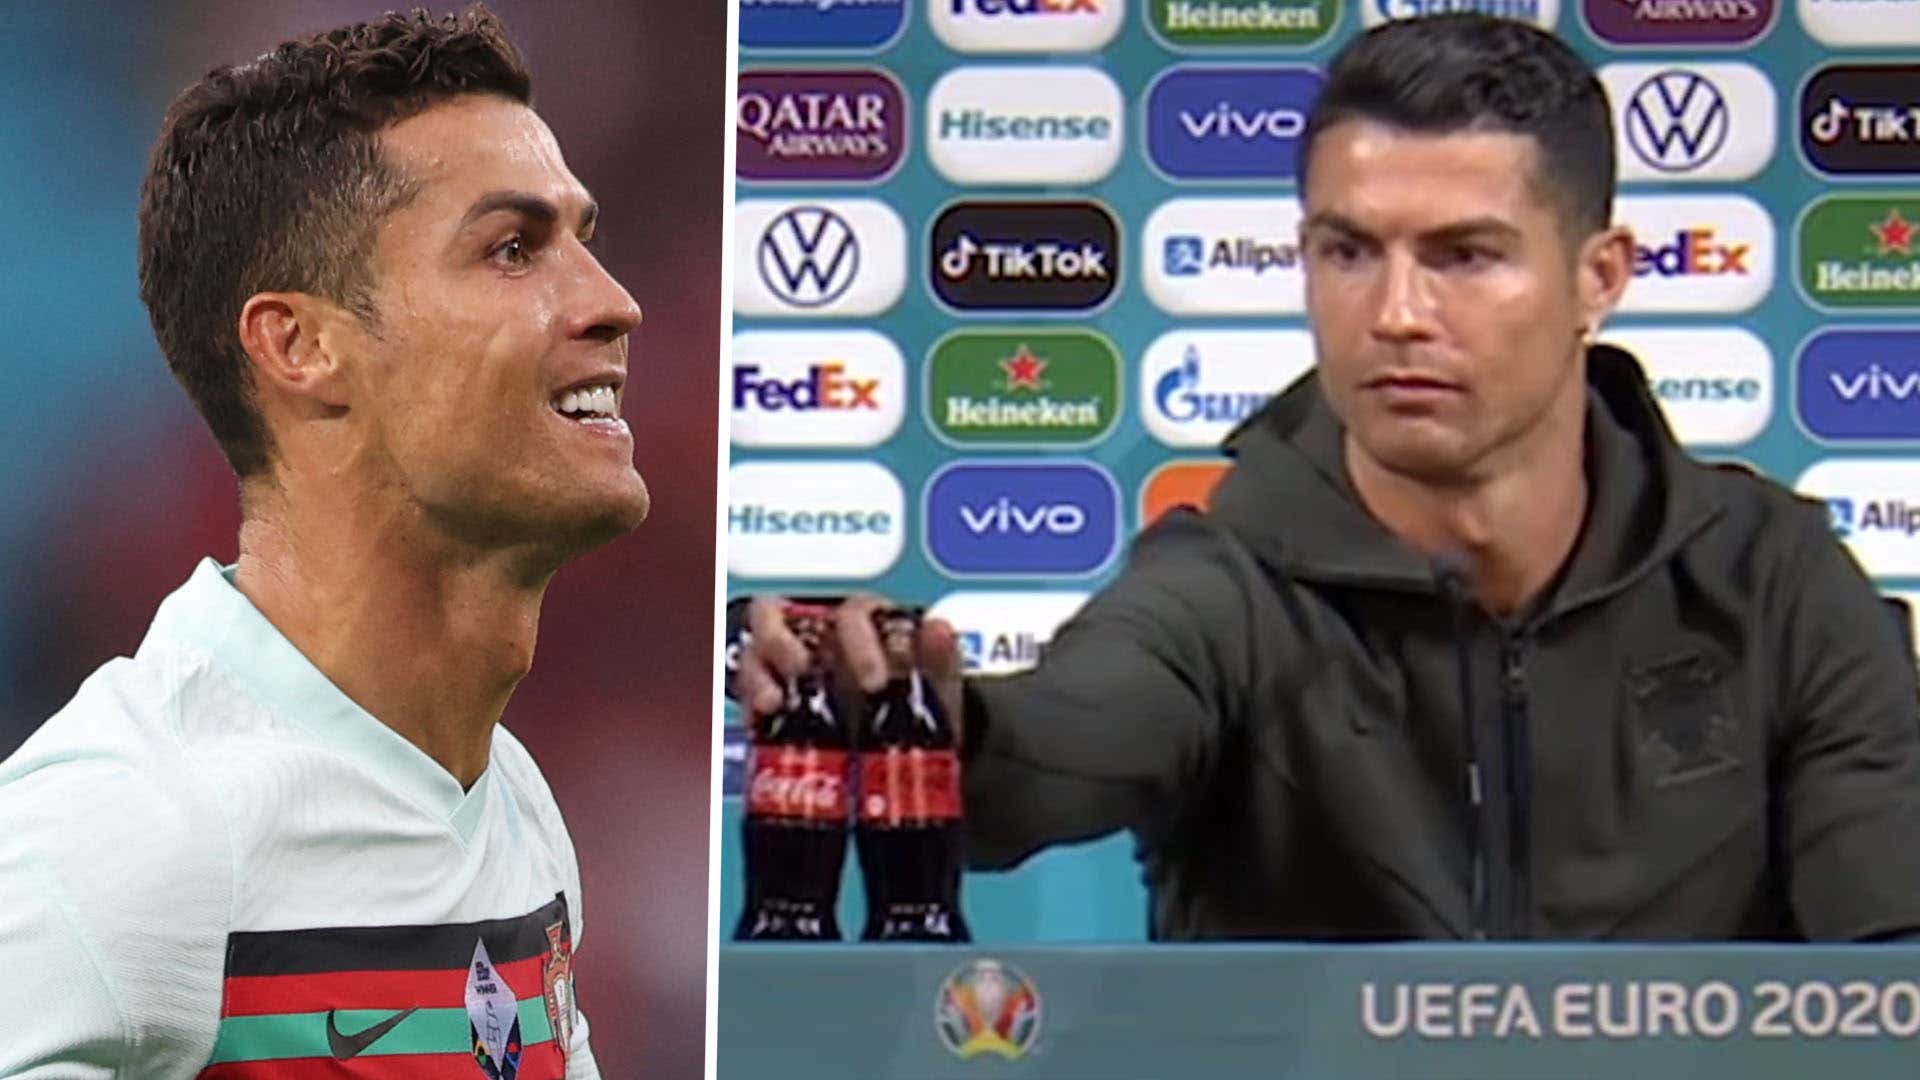 Cristiano Ronaldo Coca-Cola press conference composite Euro 2020